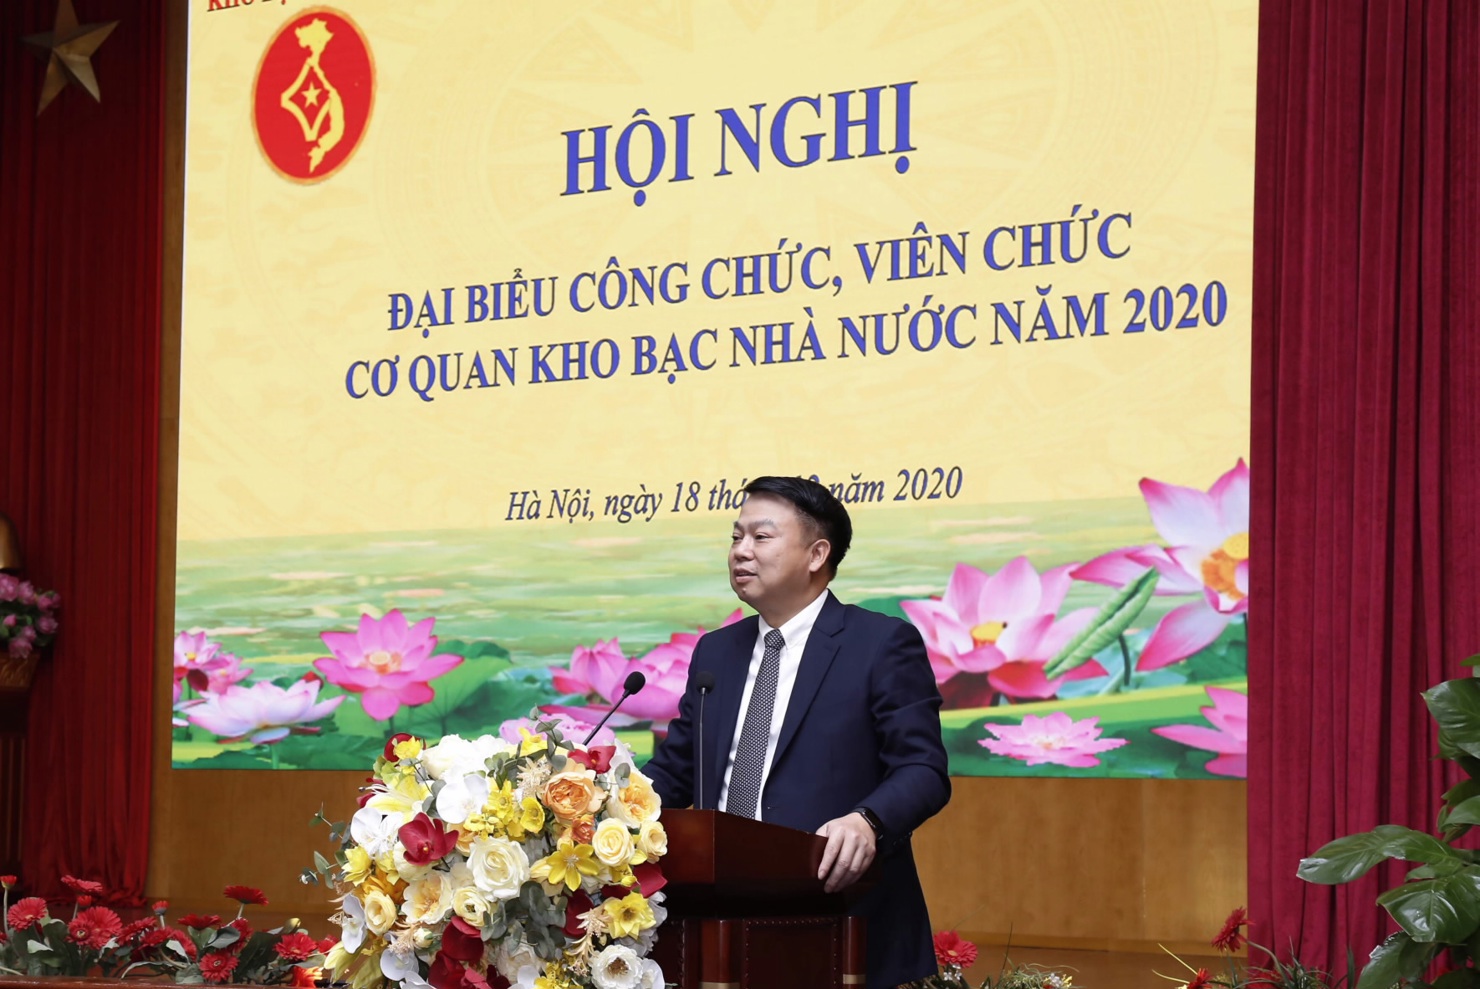 Tổng Giám đốc Kho bạc Nhà nước Nguyễn Đức Chi phát biểu chỉ đạo tại Hội nghị Đại biểu Công chức, Viên chức cơ quan Kho bạc Nhà nước năm 2020.